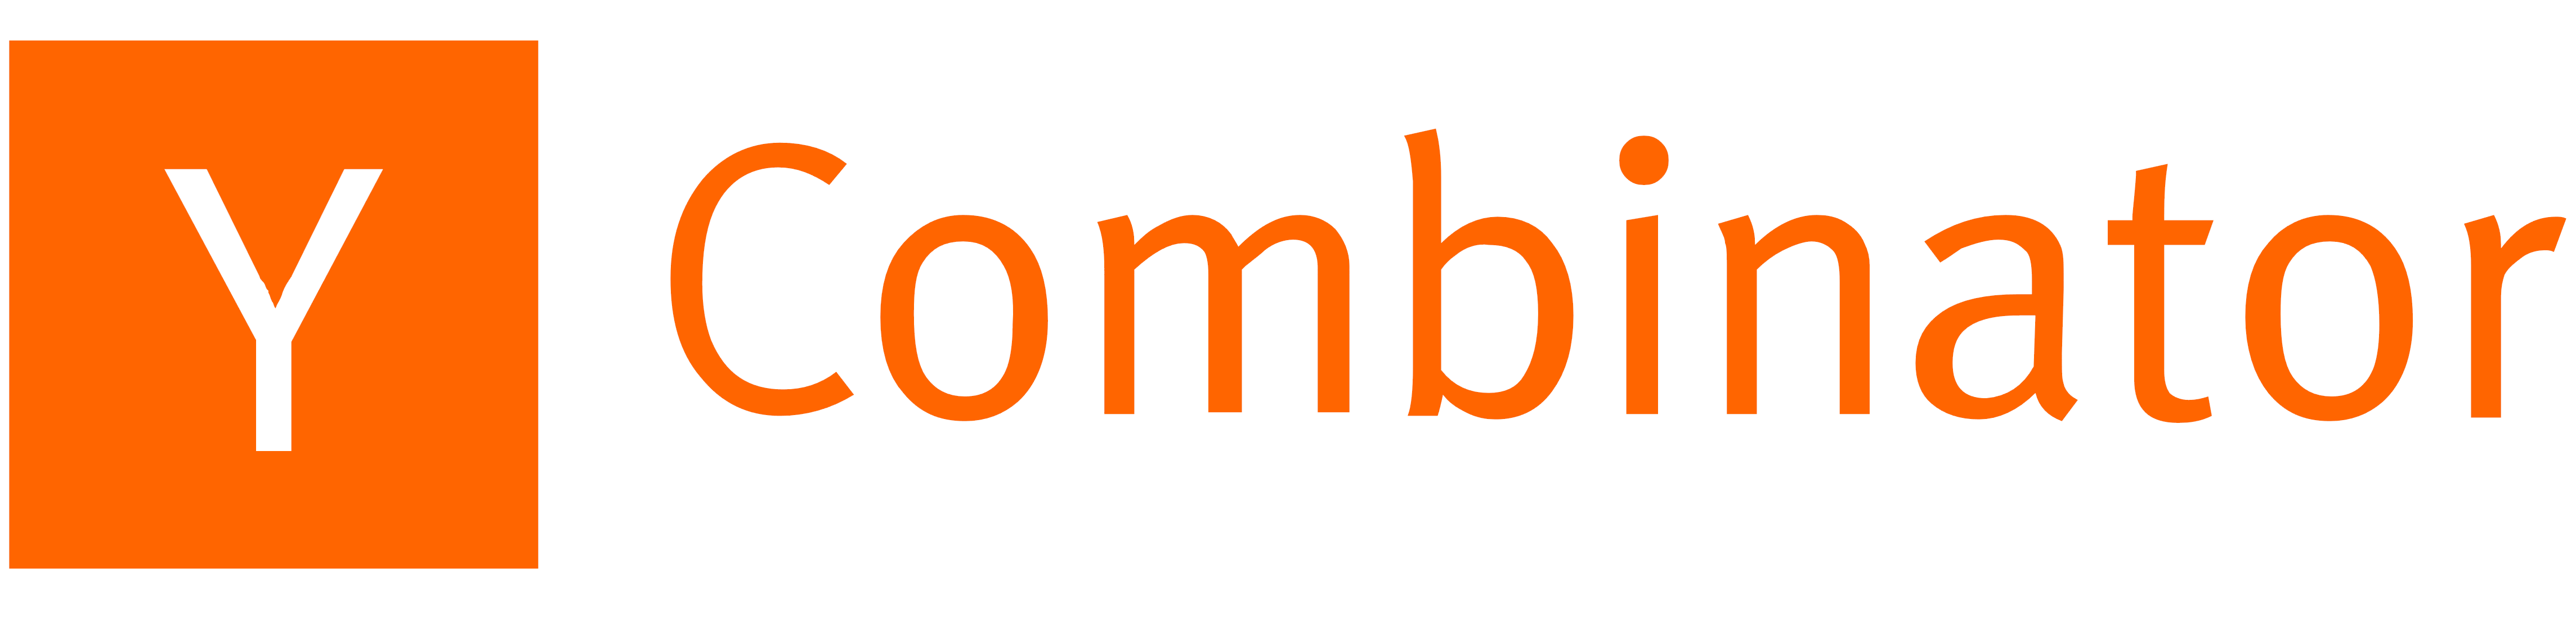 Y_Combinator_logo